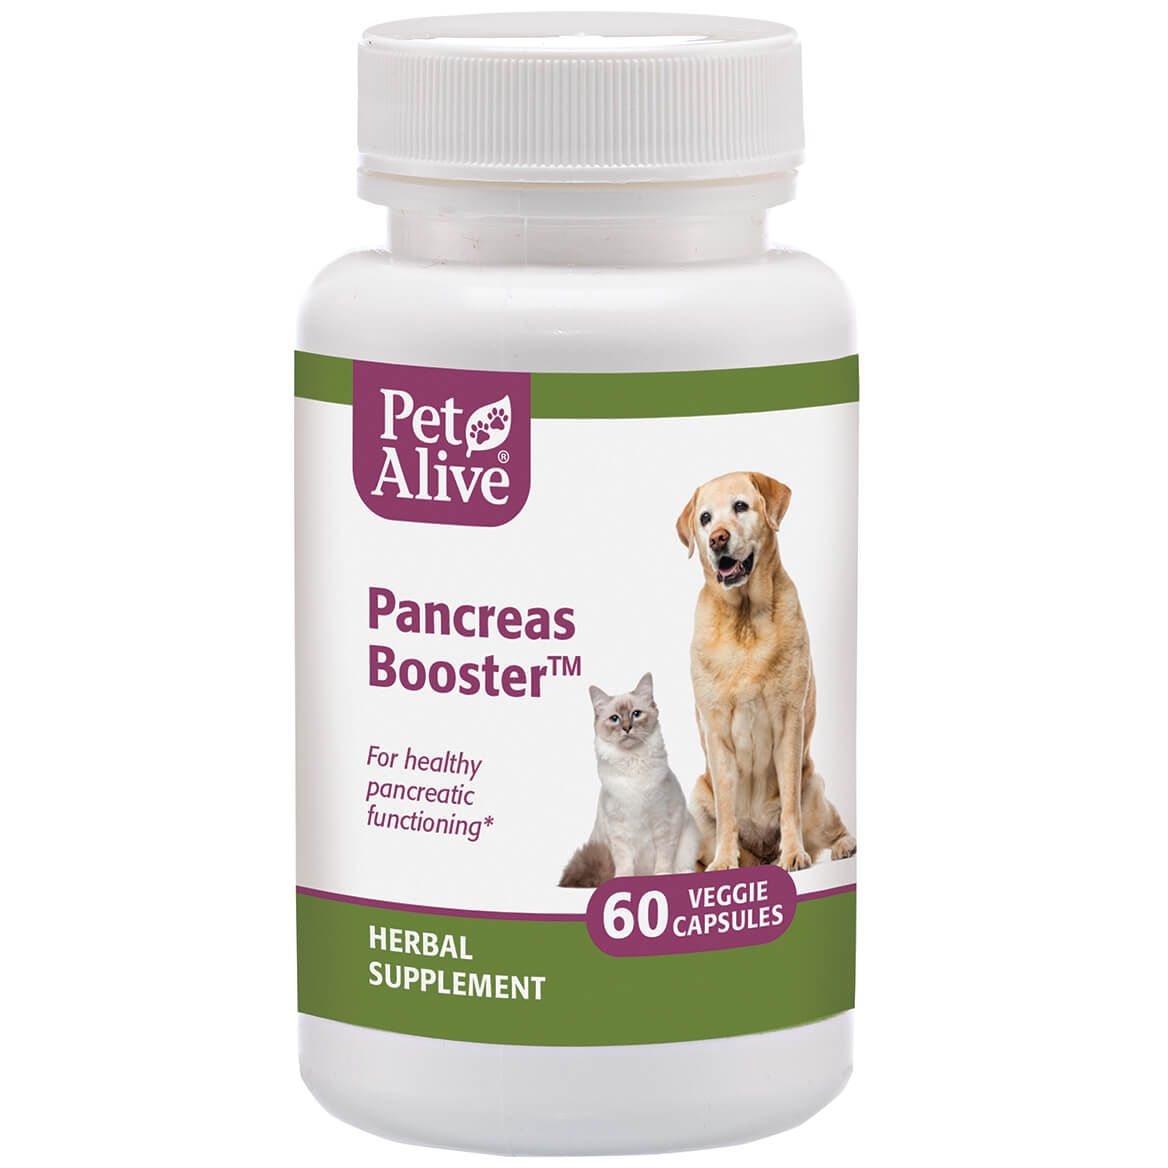 Pancreas Booster™ for Pancreatic Functioning + '-' + 351915